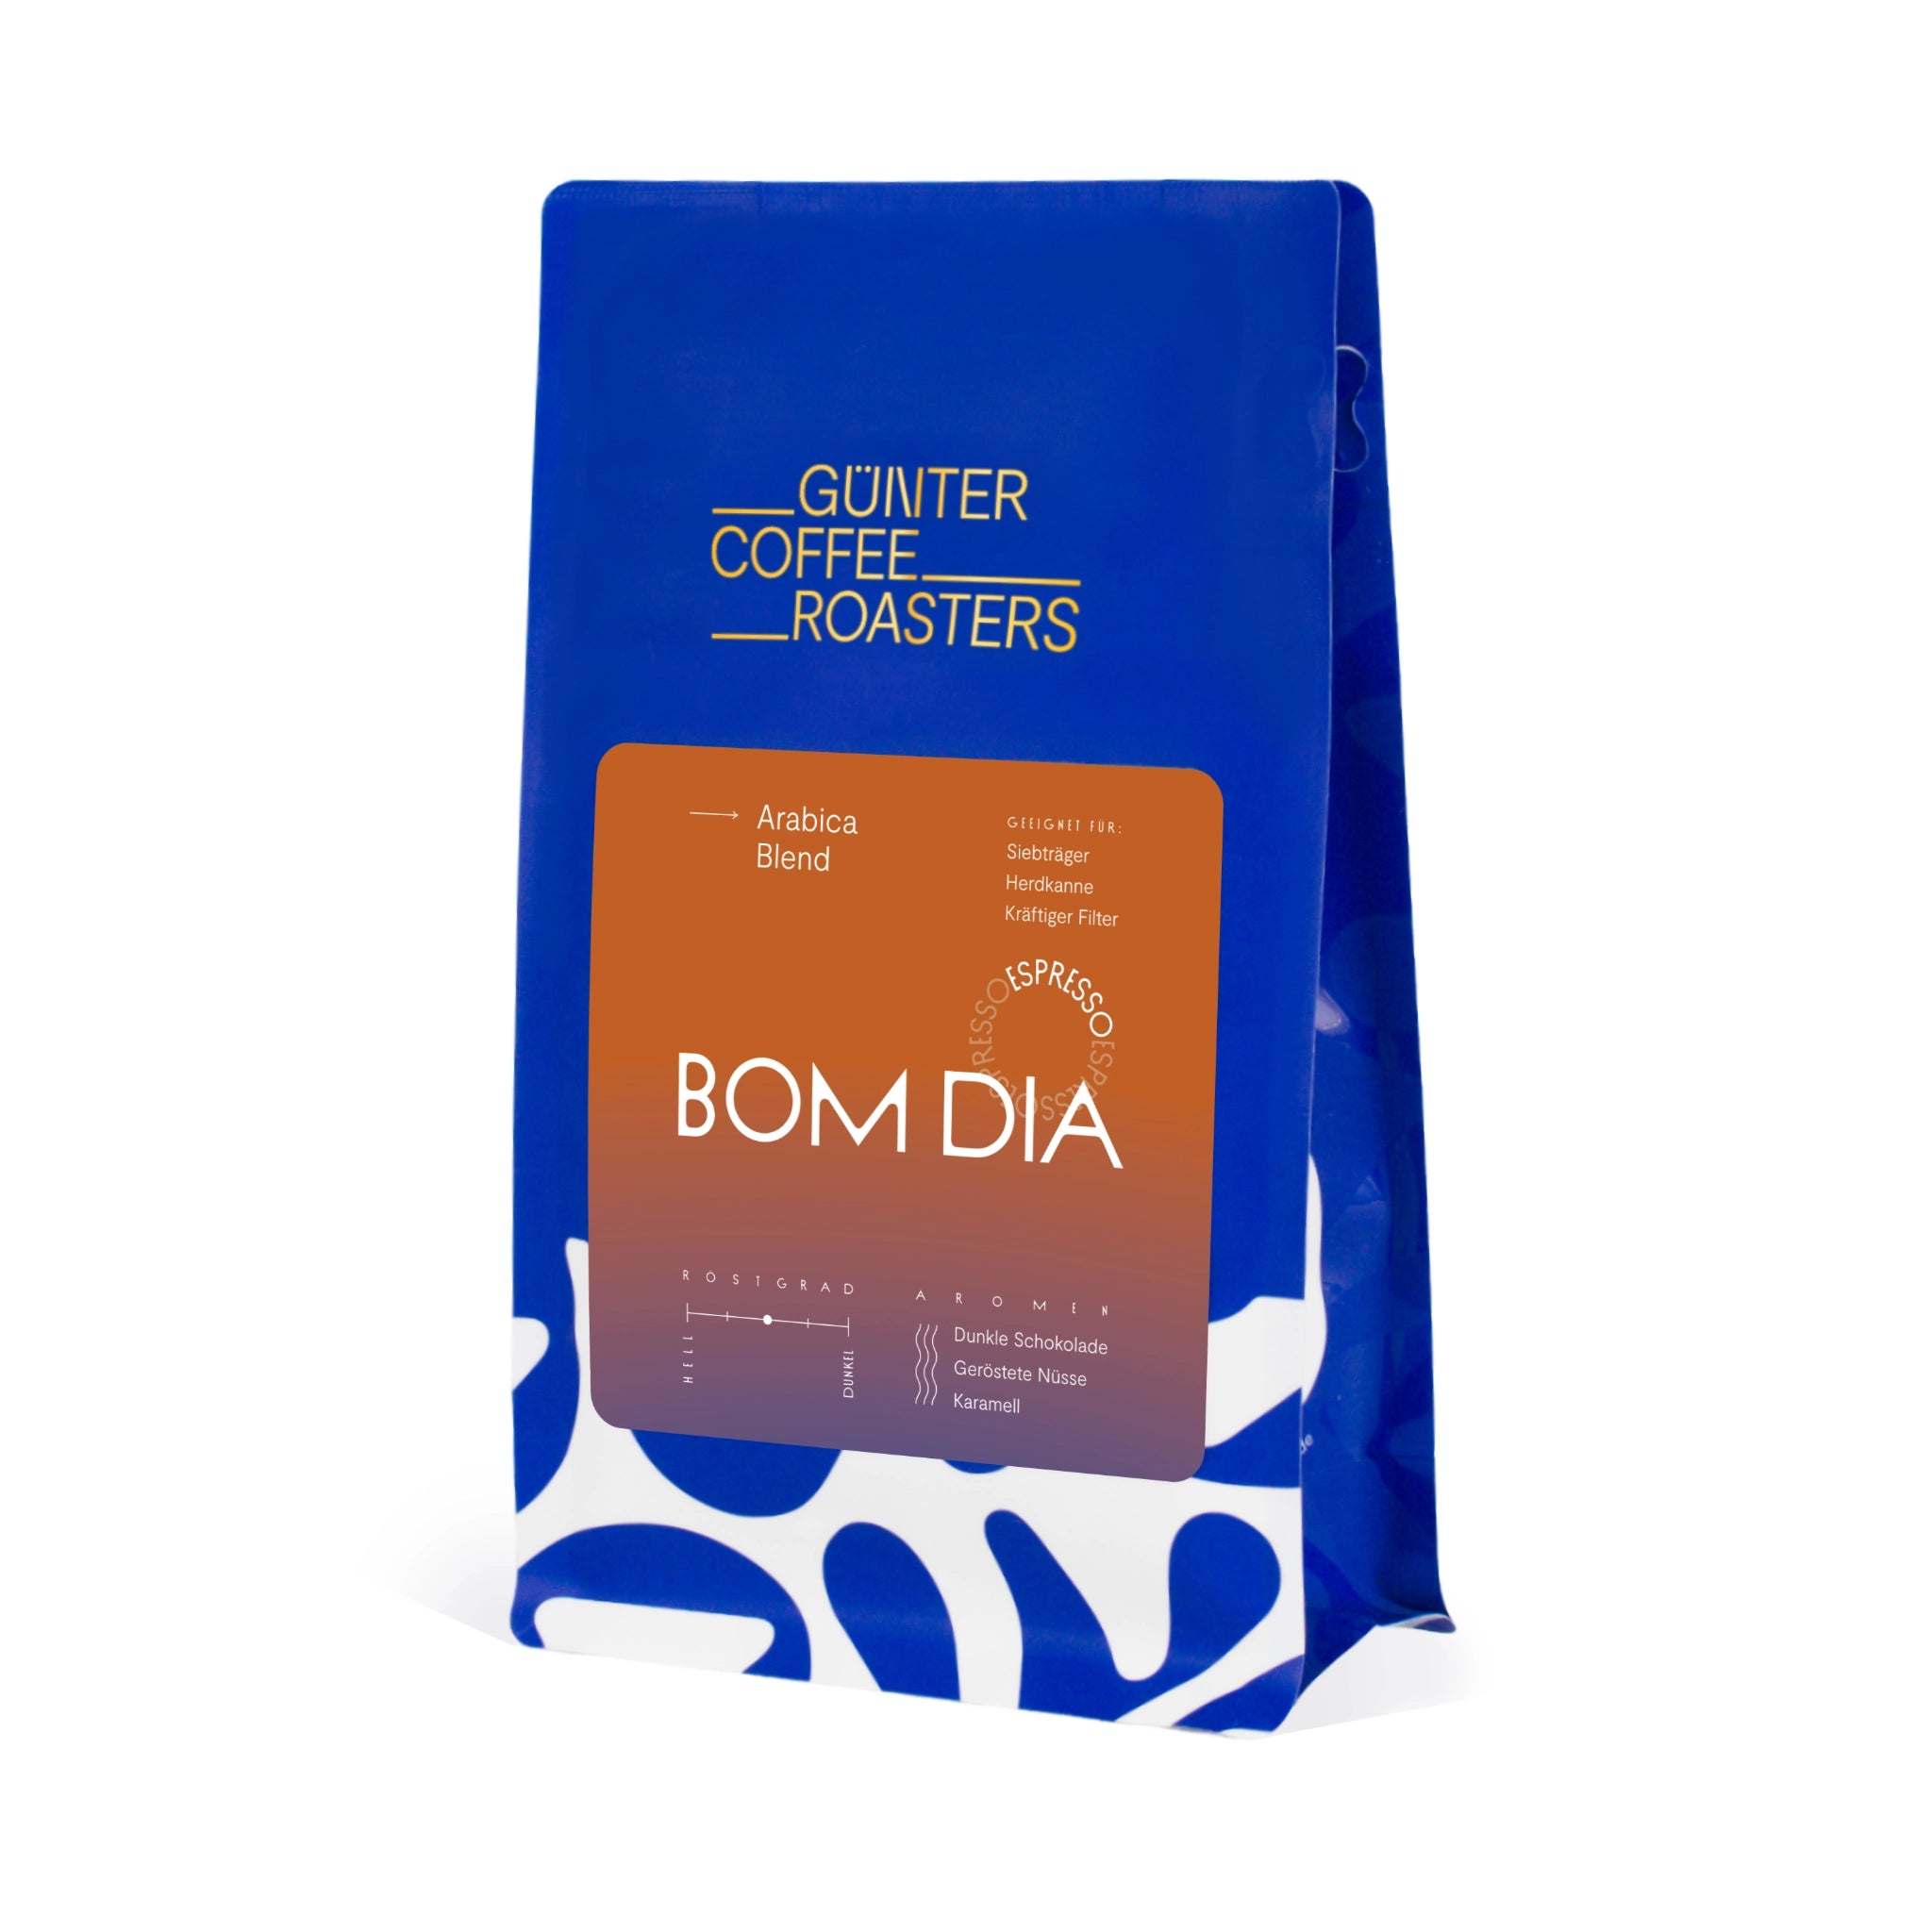 Produktverpackung Bom Dia Kaffeebohnen für die Espressozubereitung. Noten von dunkler Schokolade, gerösteten Nüssen und Karamell. Röstgrad 3 von 5. Arabica-Mischung.